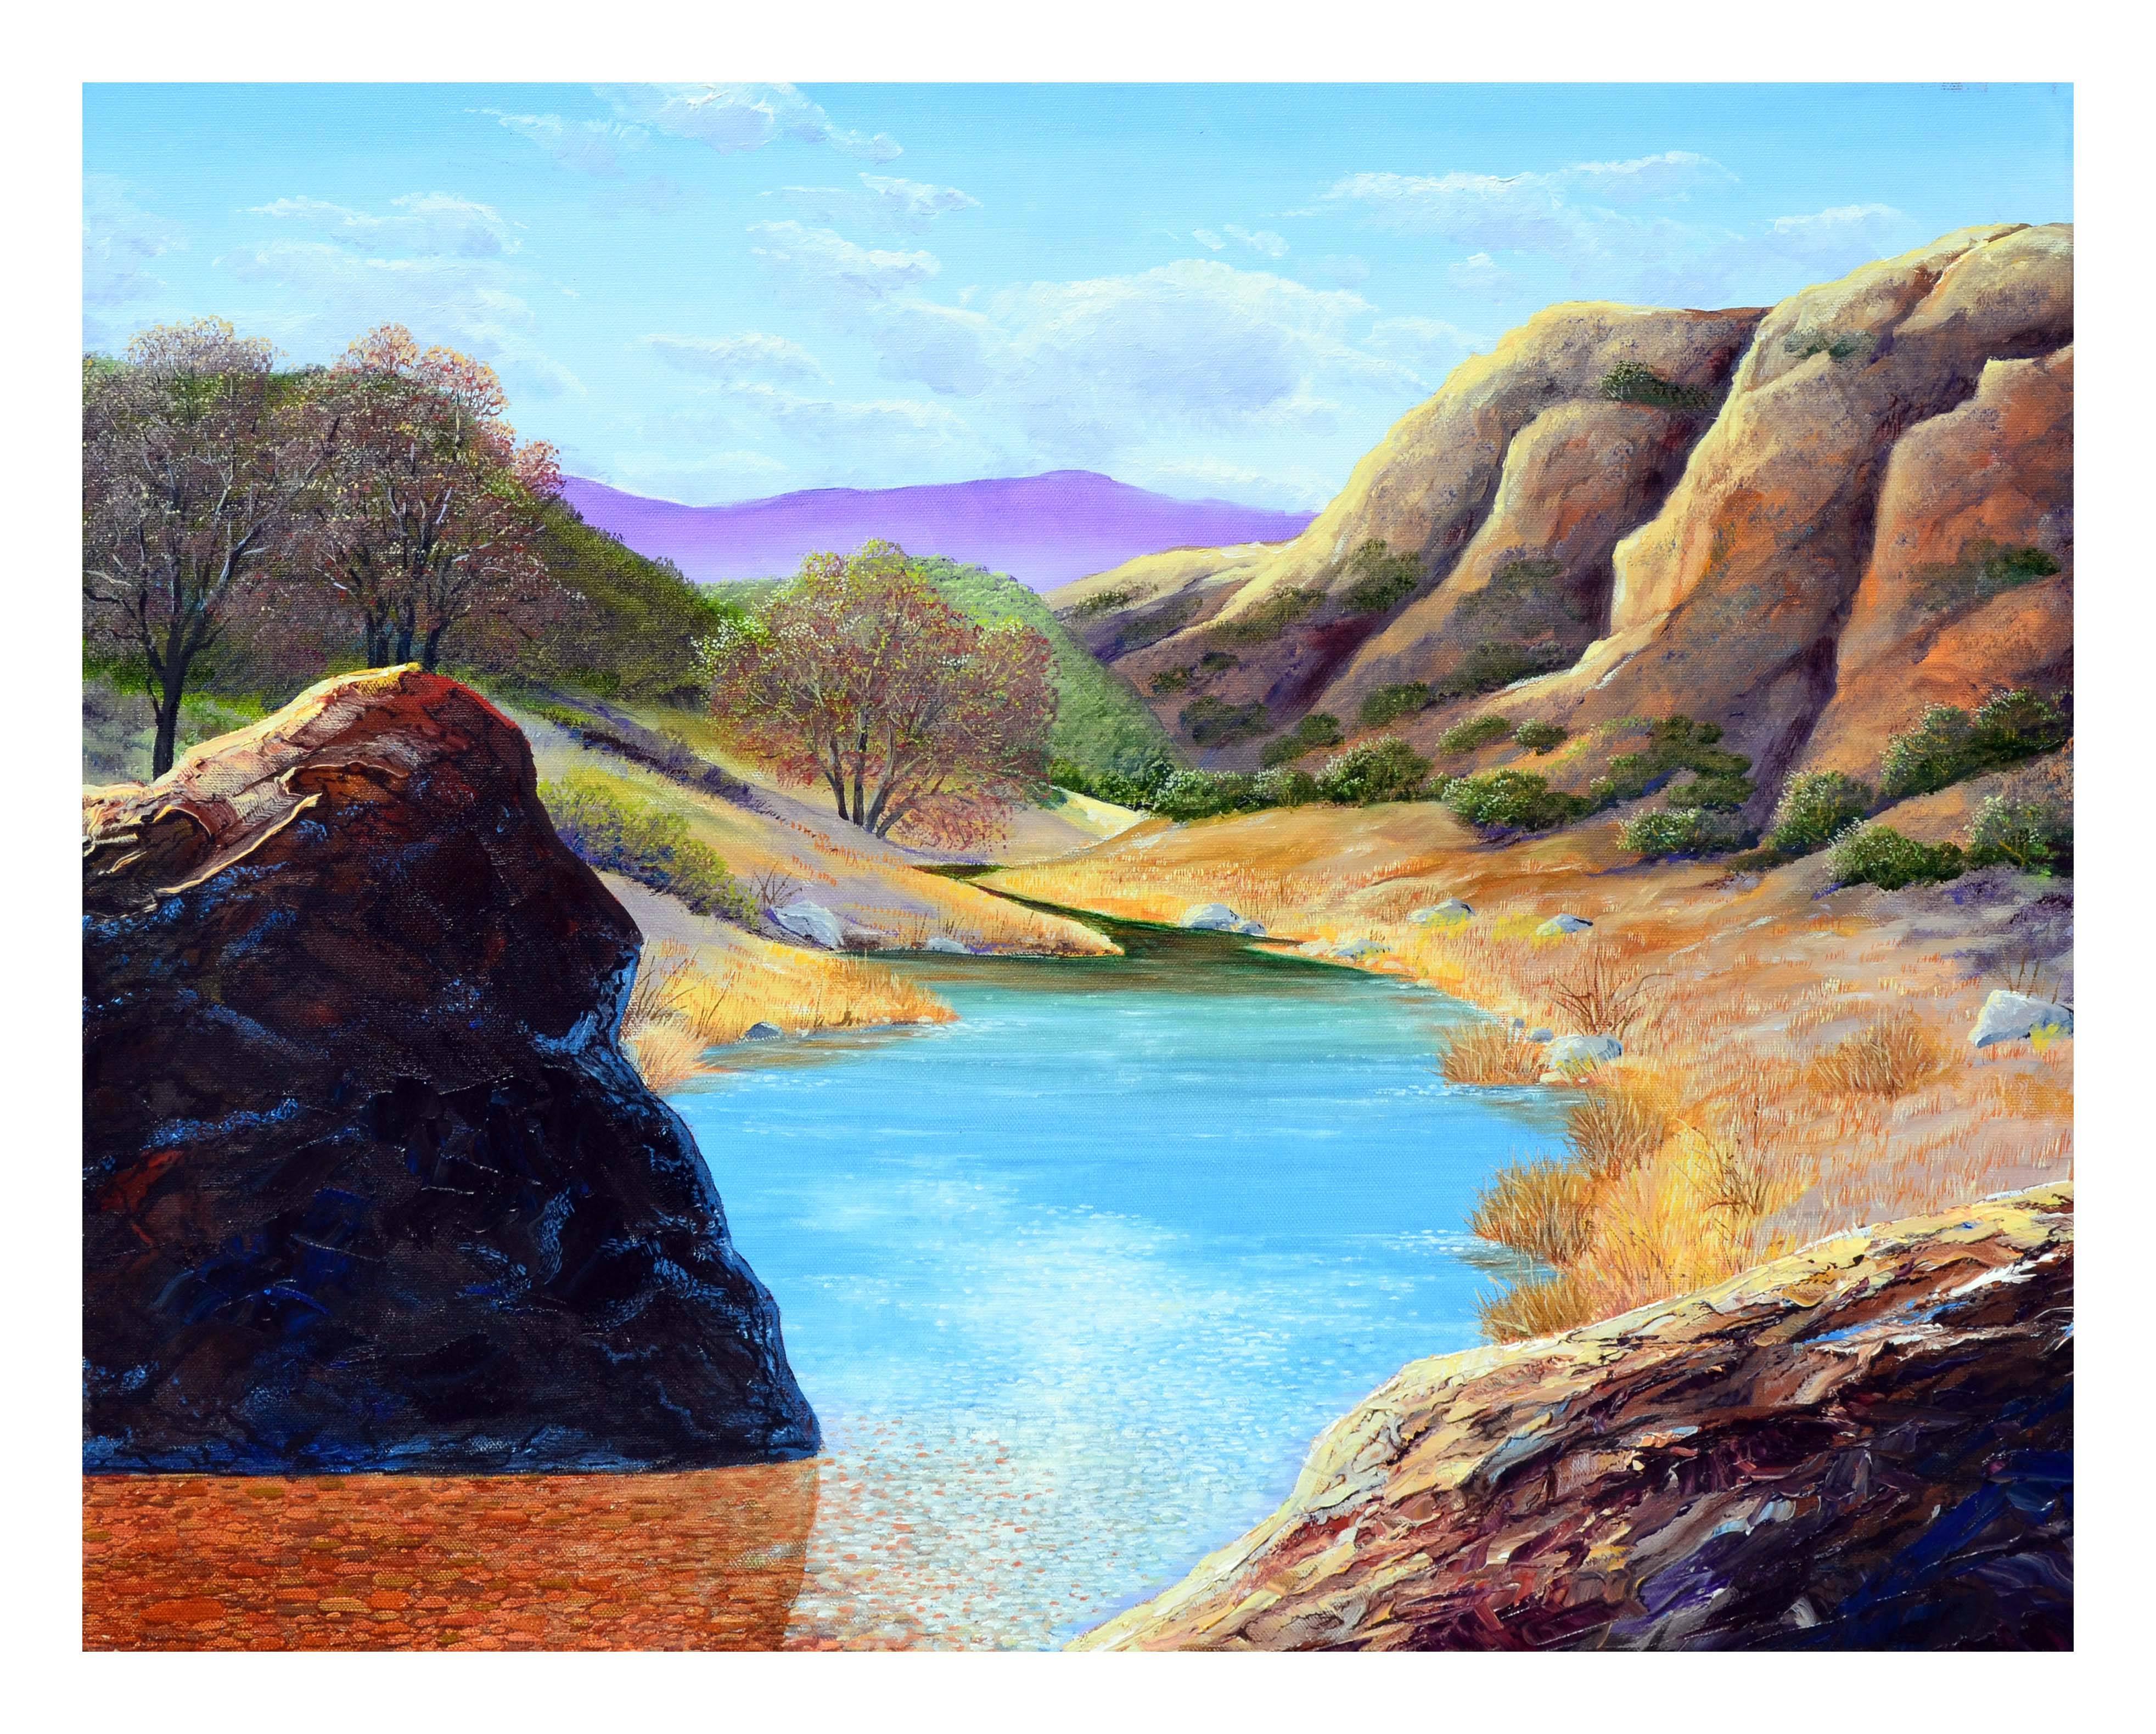 Luke Stamos Landscape Painting – Mount Hamilton Realistische Landschaft